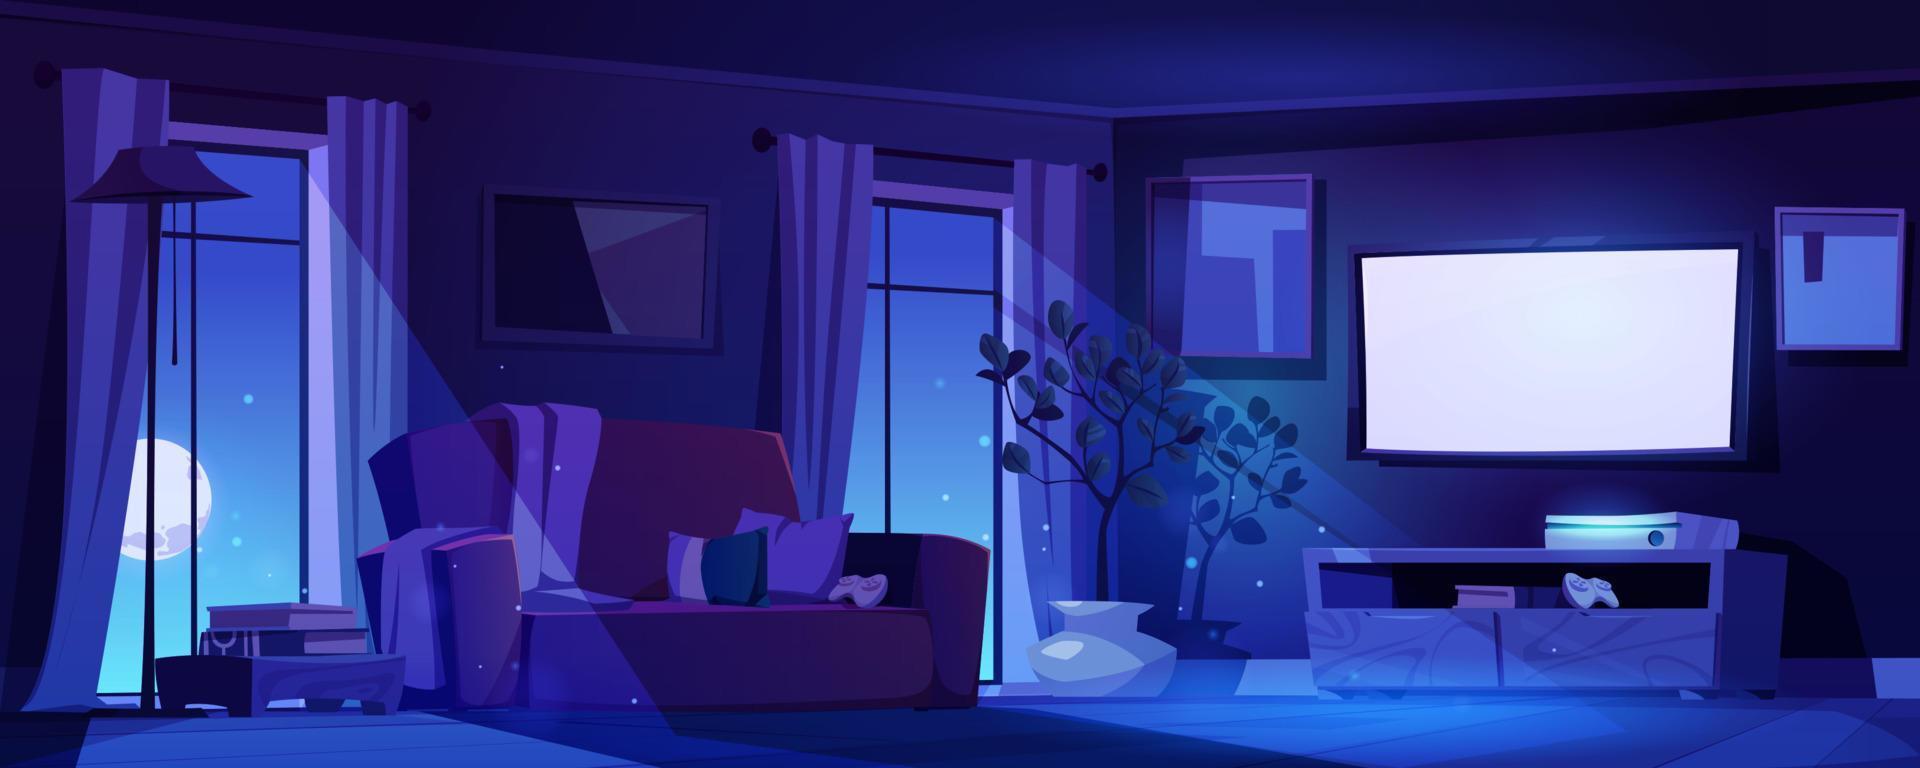 Night living room interior in moonlight, home vector